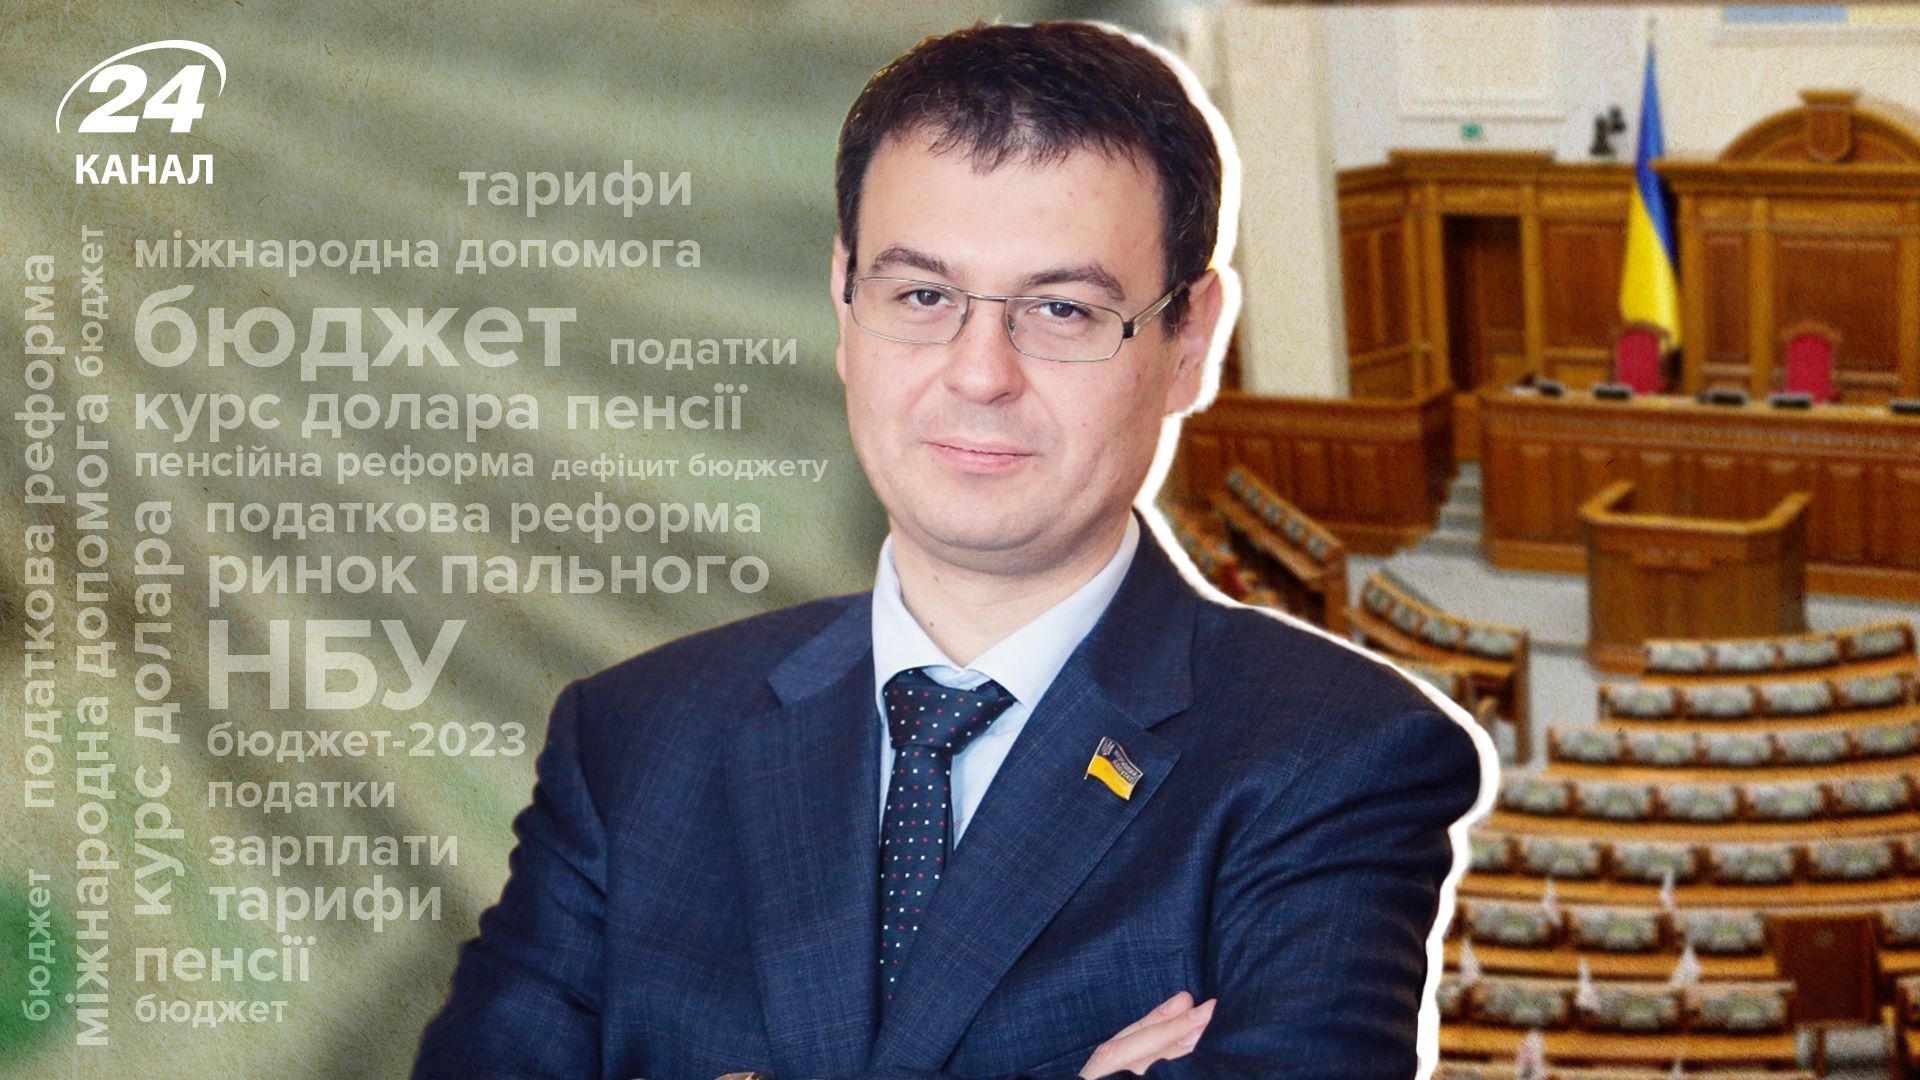 Бюджет-2023 і податки у 2023 році - як житимуть українці - інтерв'ю з Гетманцевим